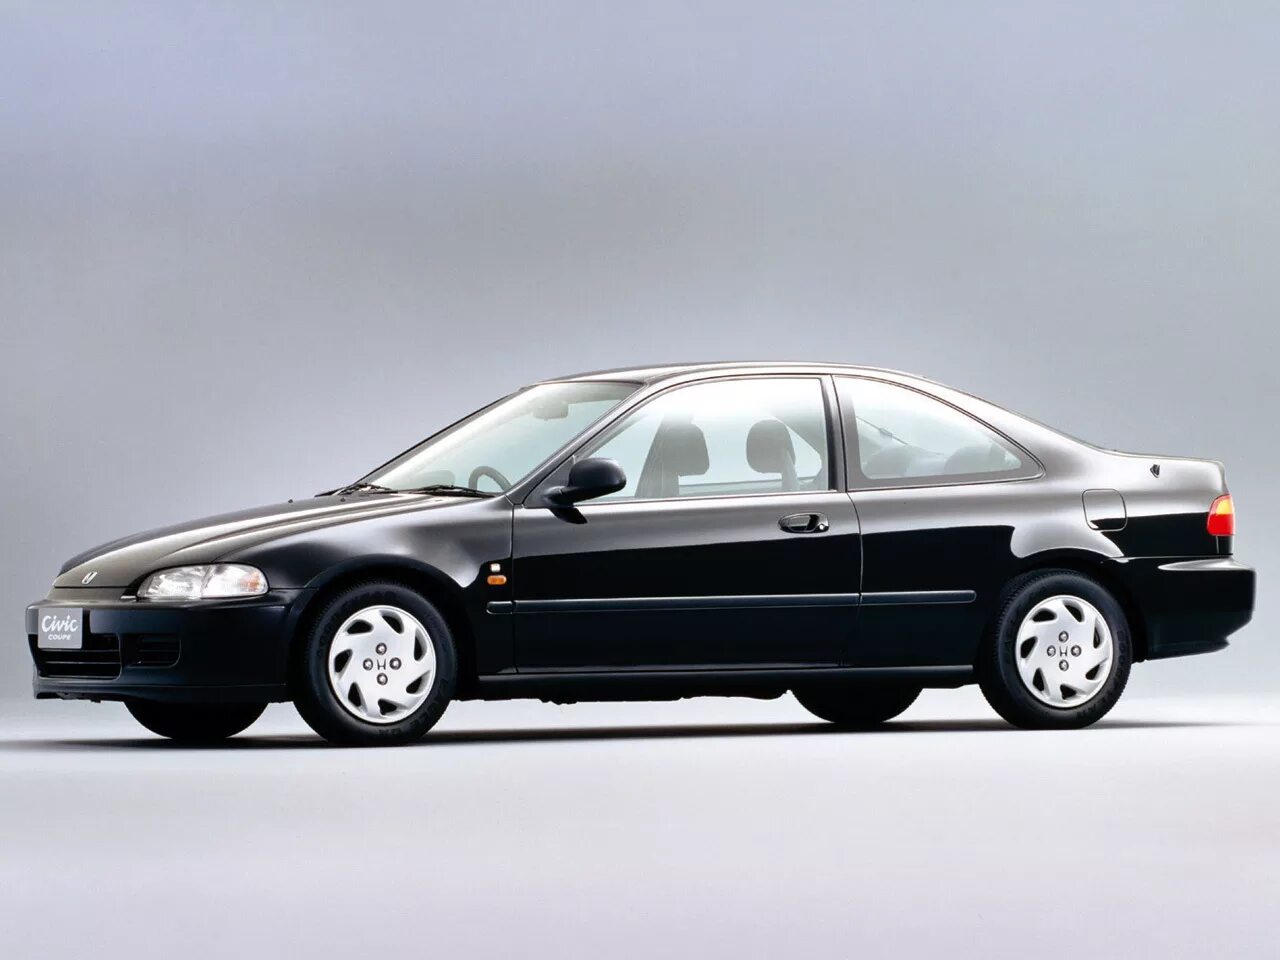 Цивик 5 поколение. Honda Civic Coupe ej1 1993. Honda Civic Coupe 1993. Honda Civic 5 поколение купе. Хонда Цивик 5 поколения.